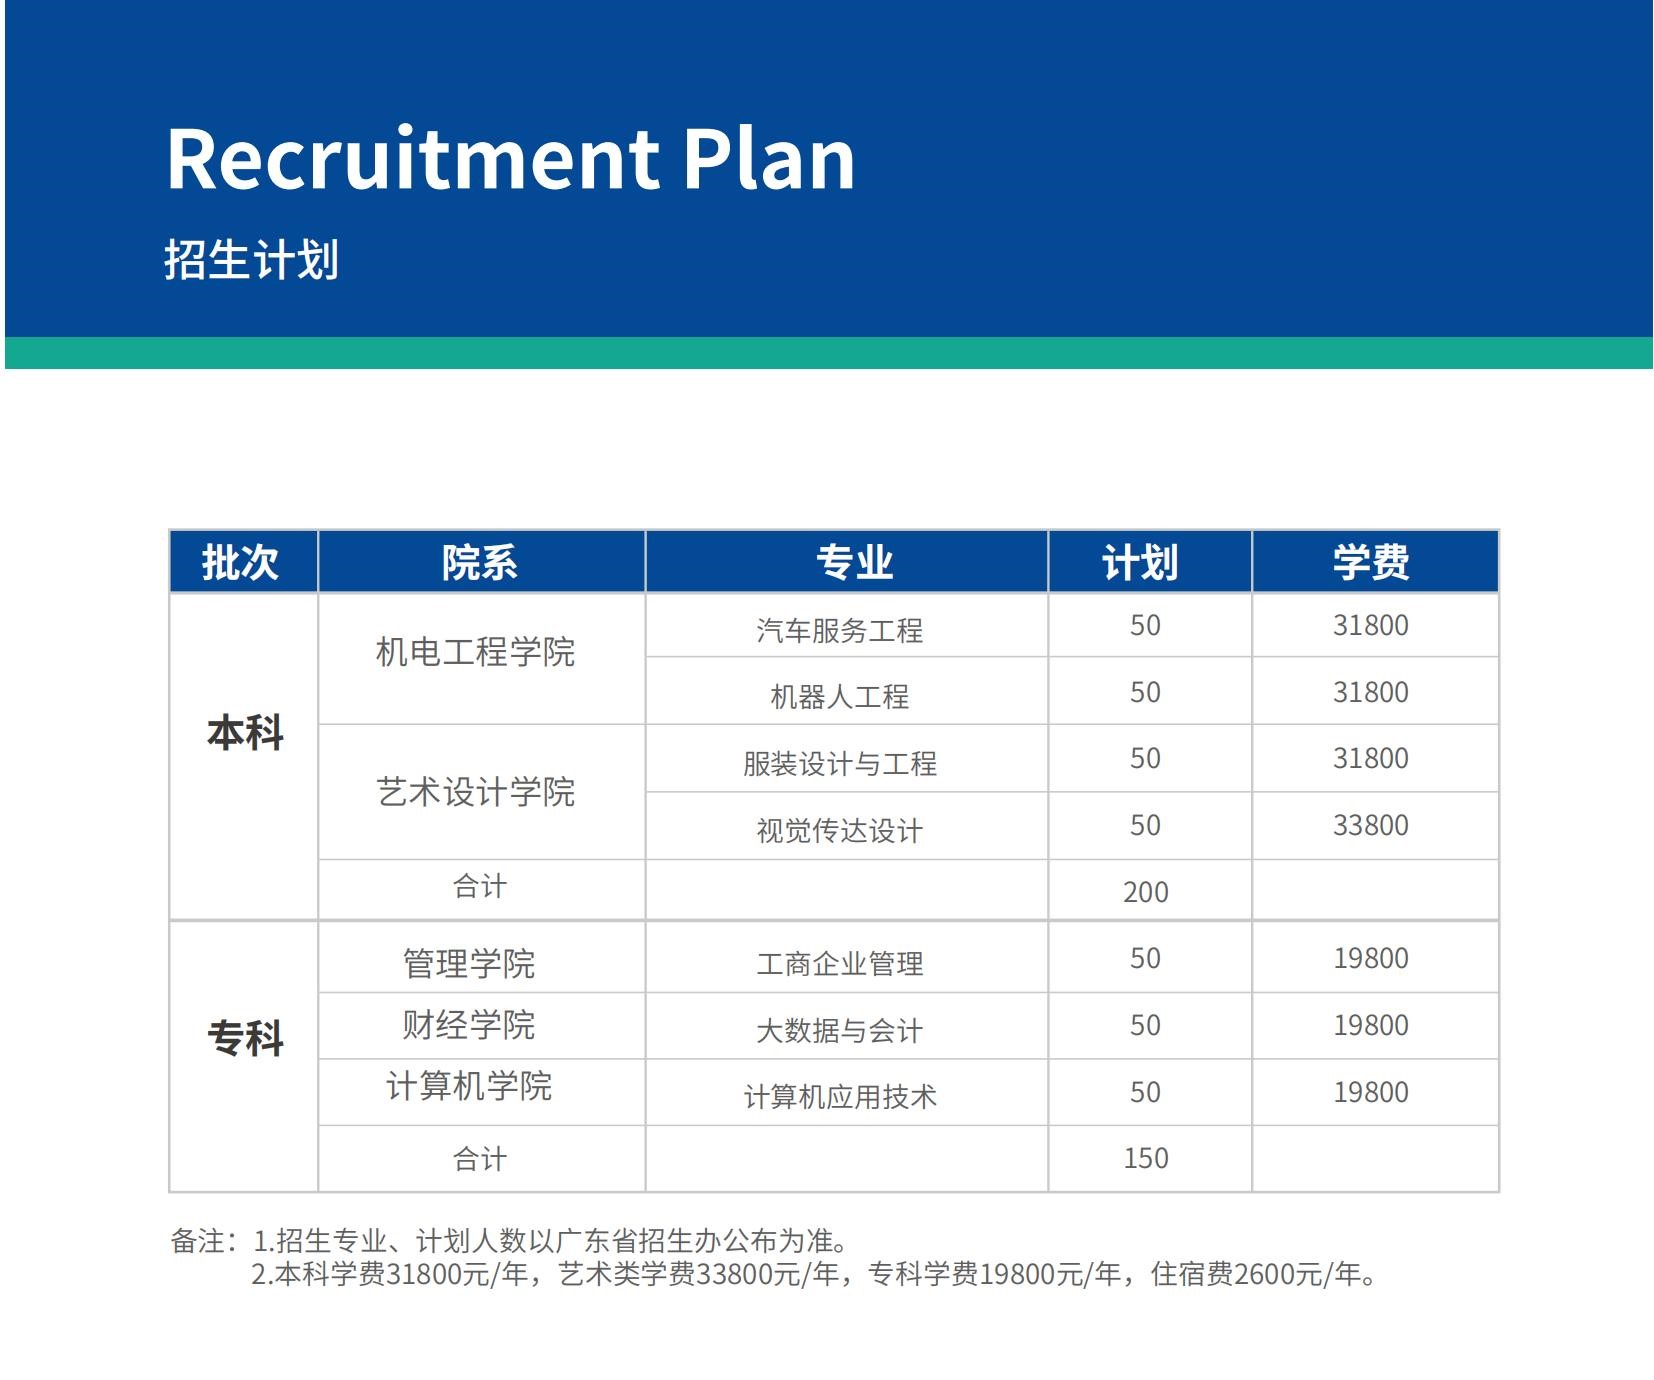 广东科技学院3+证书招生计划